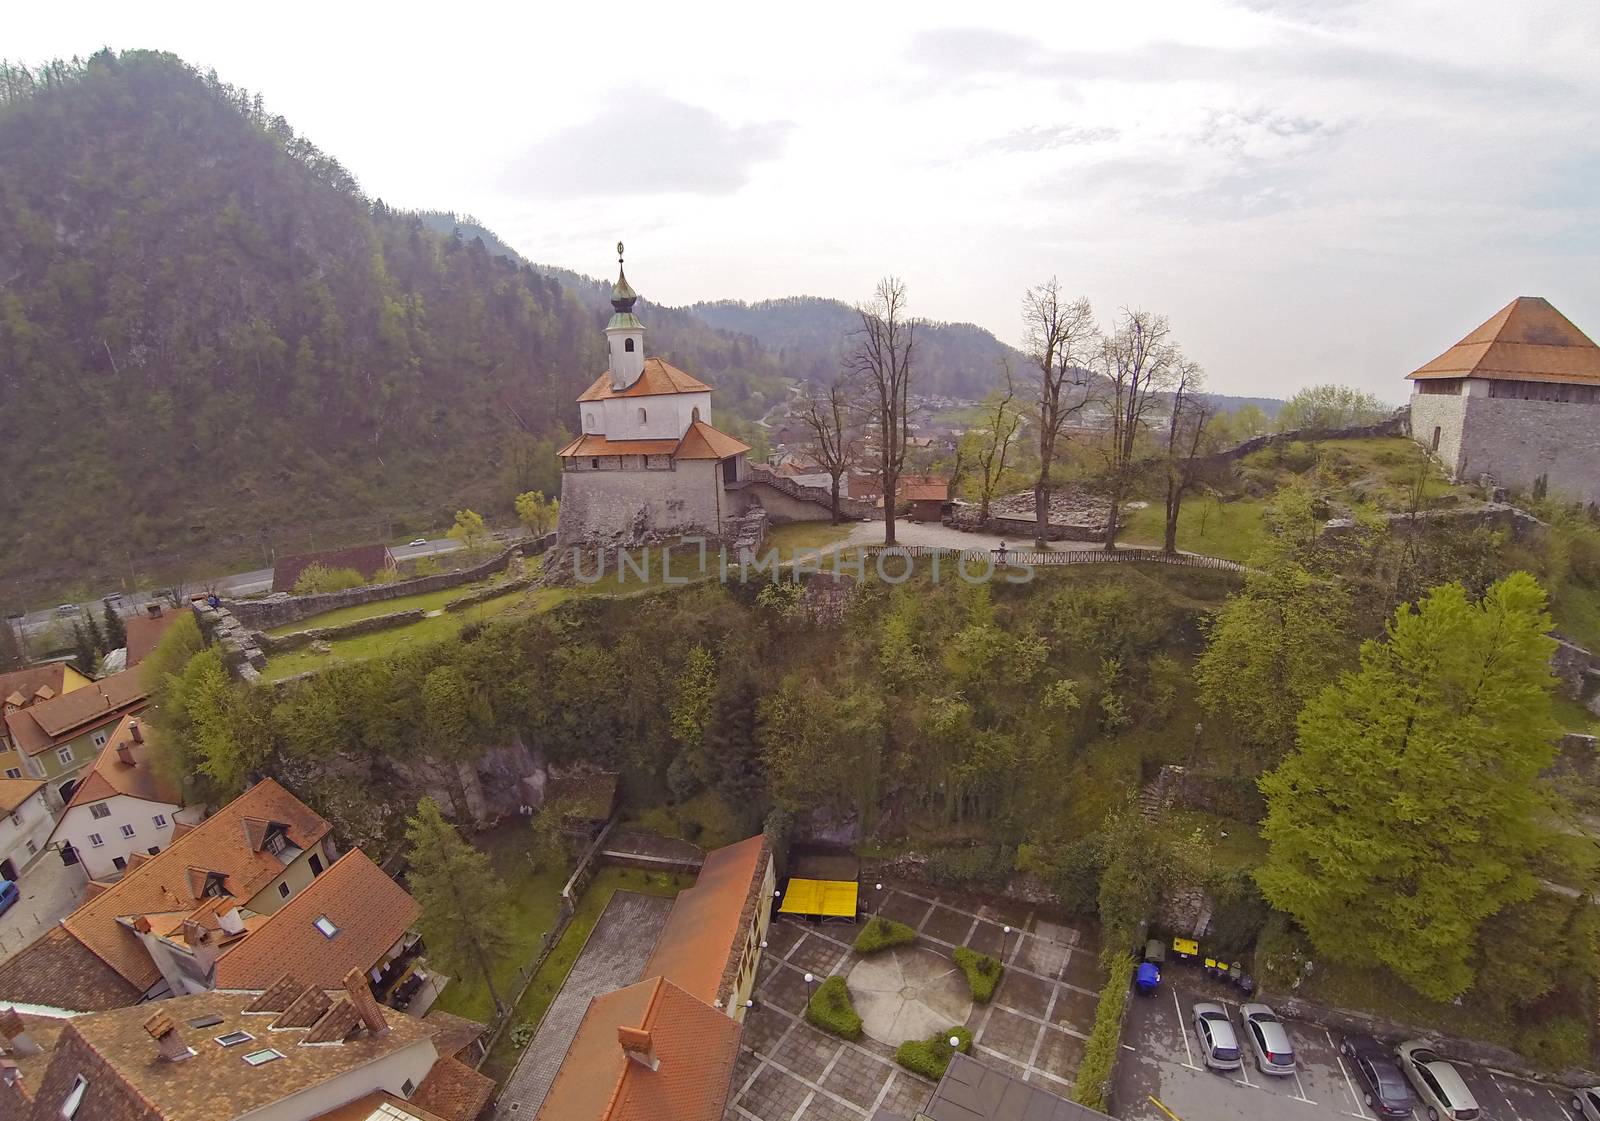 Aerial view on Kamnik in Slovenia by Aarstudio